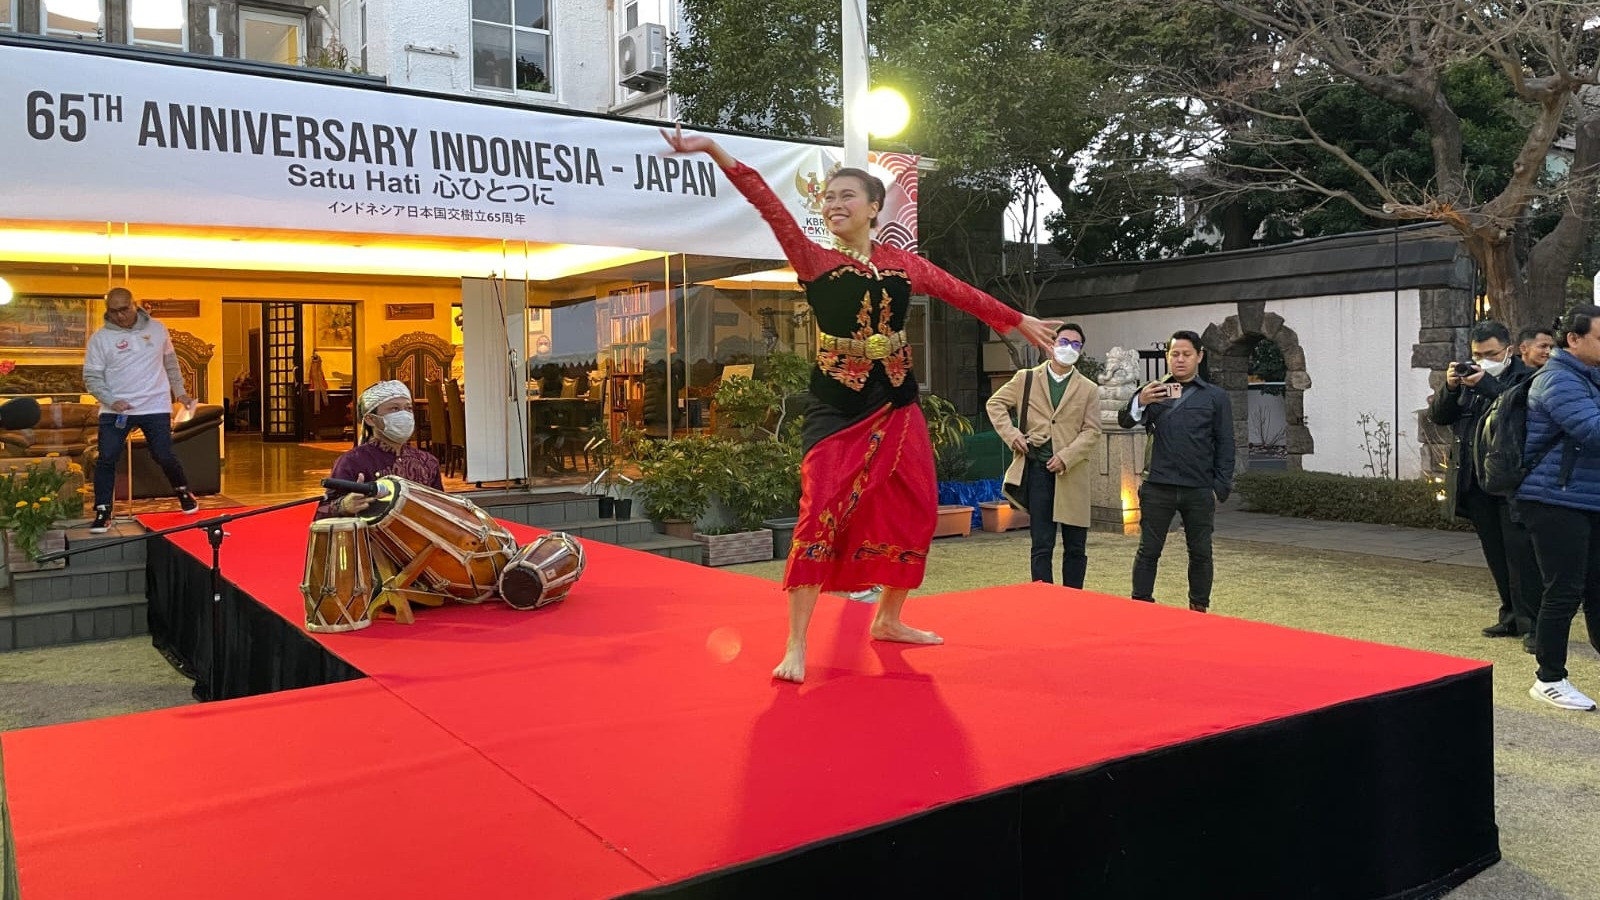 KBRI Tokyo bekerja sama dengan PT Amerta Indah Otsuka dan Cerita Lari menggelar kegiatan Carbo Loading untuk pelari Indonesia jelang Tokyo Marathon 2023, di Wisma Duta pada Jumat (3/3/2023) waktu setempat.